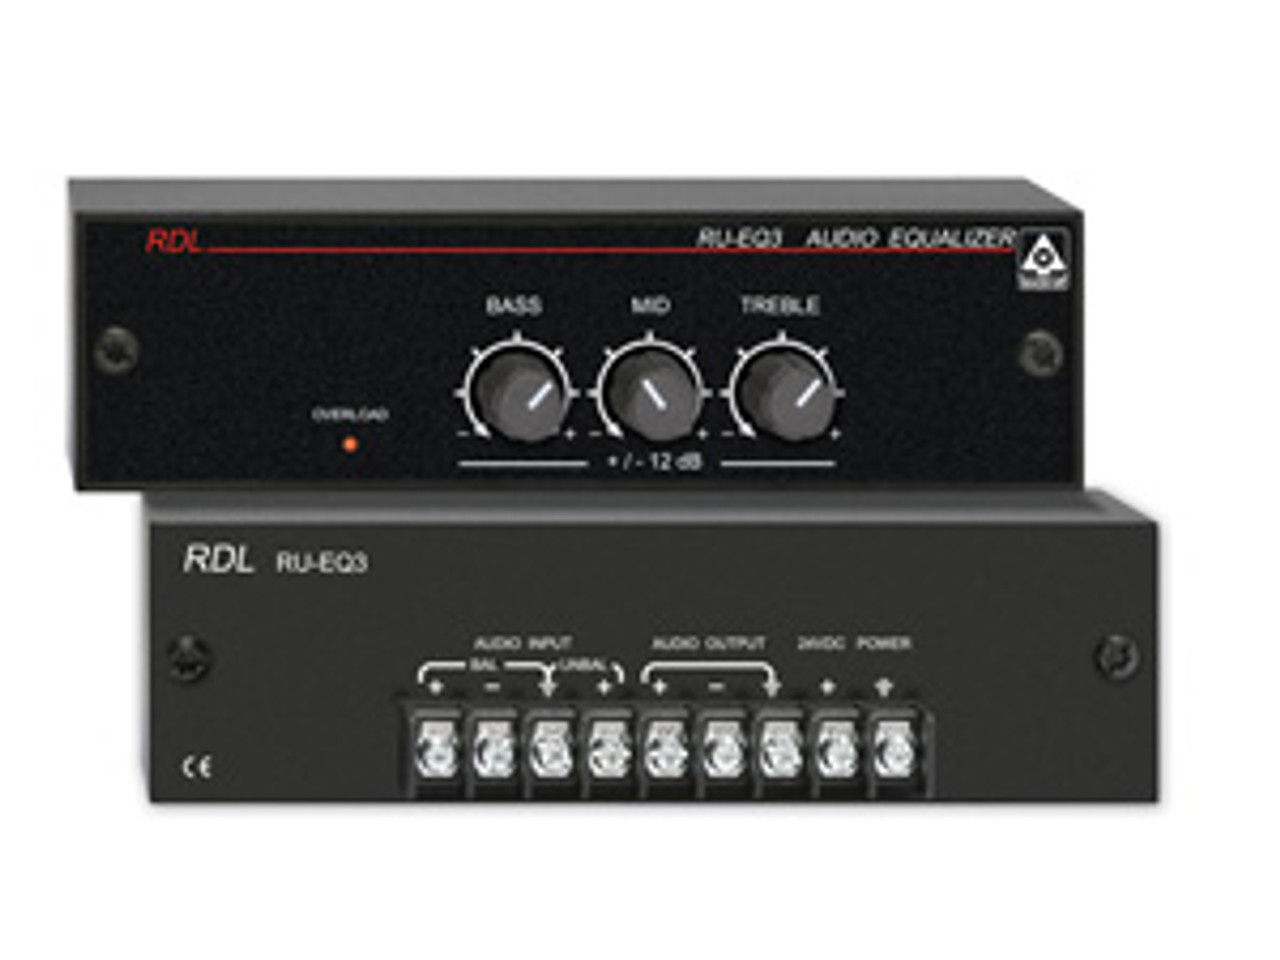  RDL RU-EQ3 Three Band Audio Equalizer with Knobs - Terminal Block (RU-EQ3)